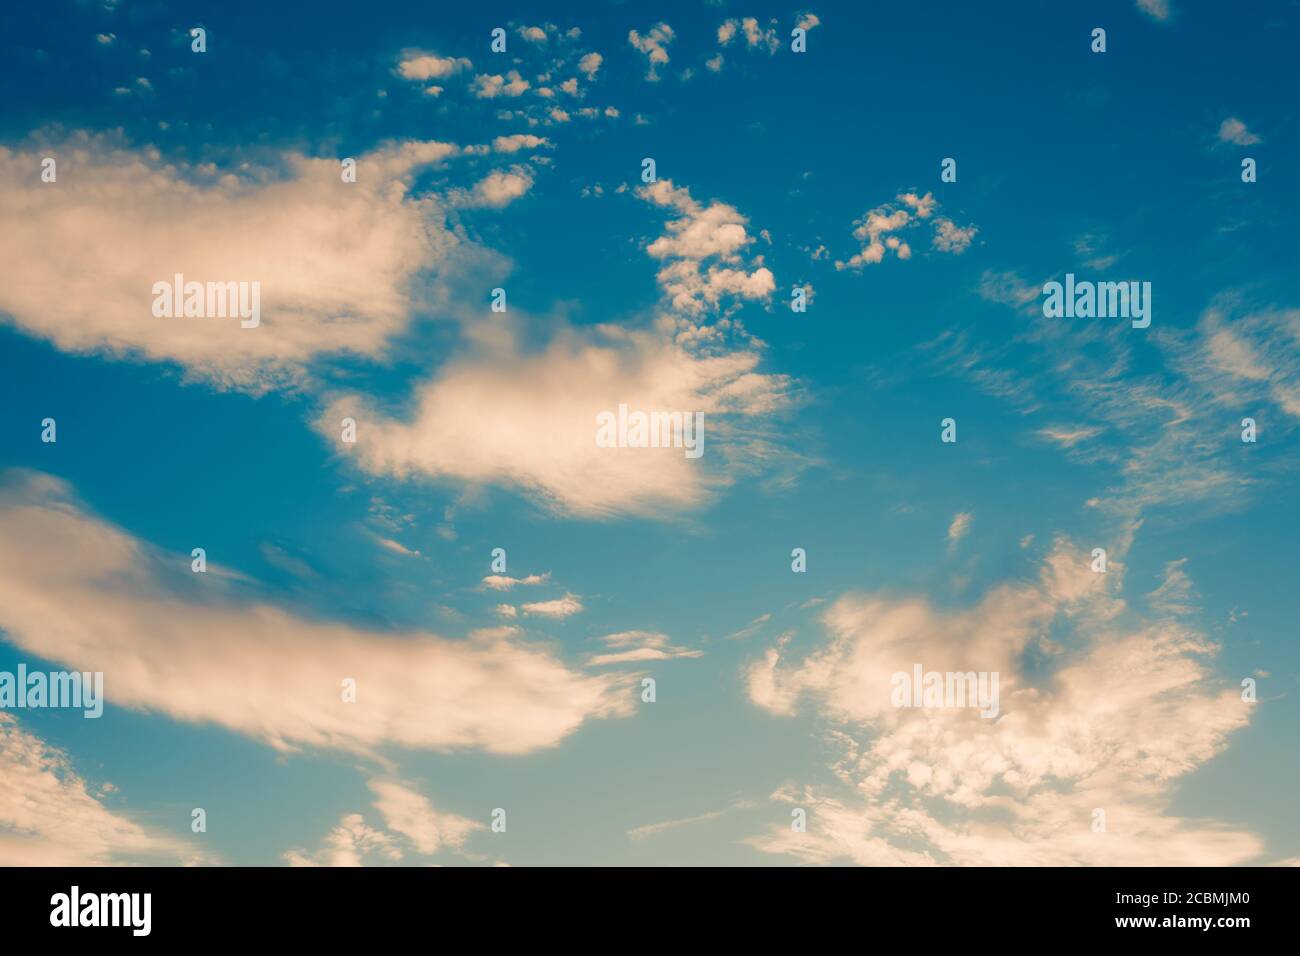 Dramatischer blauer Himmel mit gelben Wolken, Vintage abstrakter Hintergrund Stockfoto